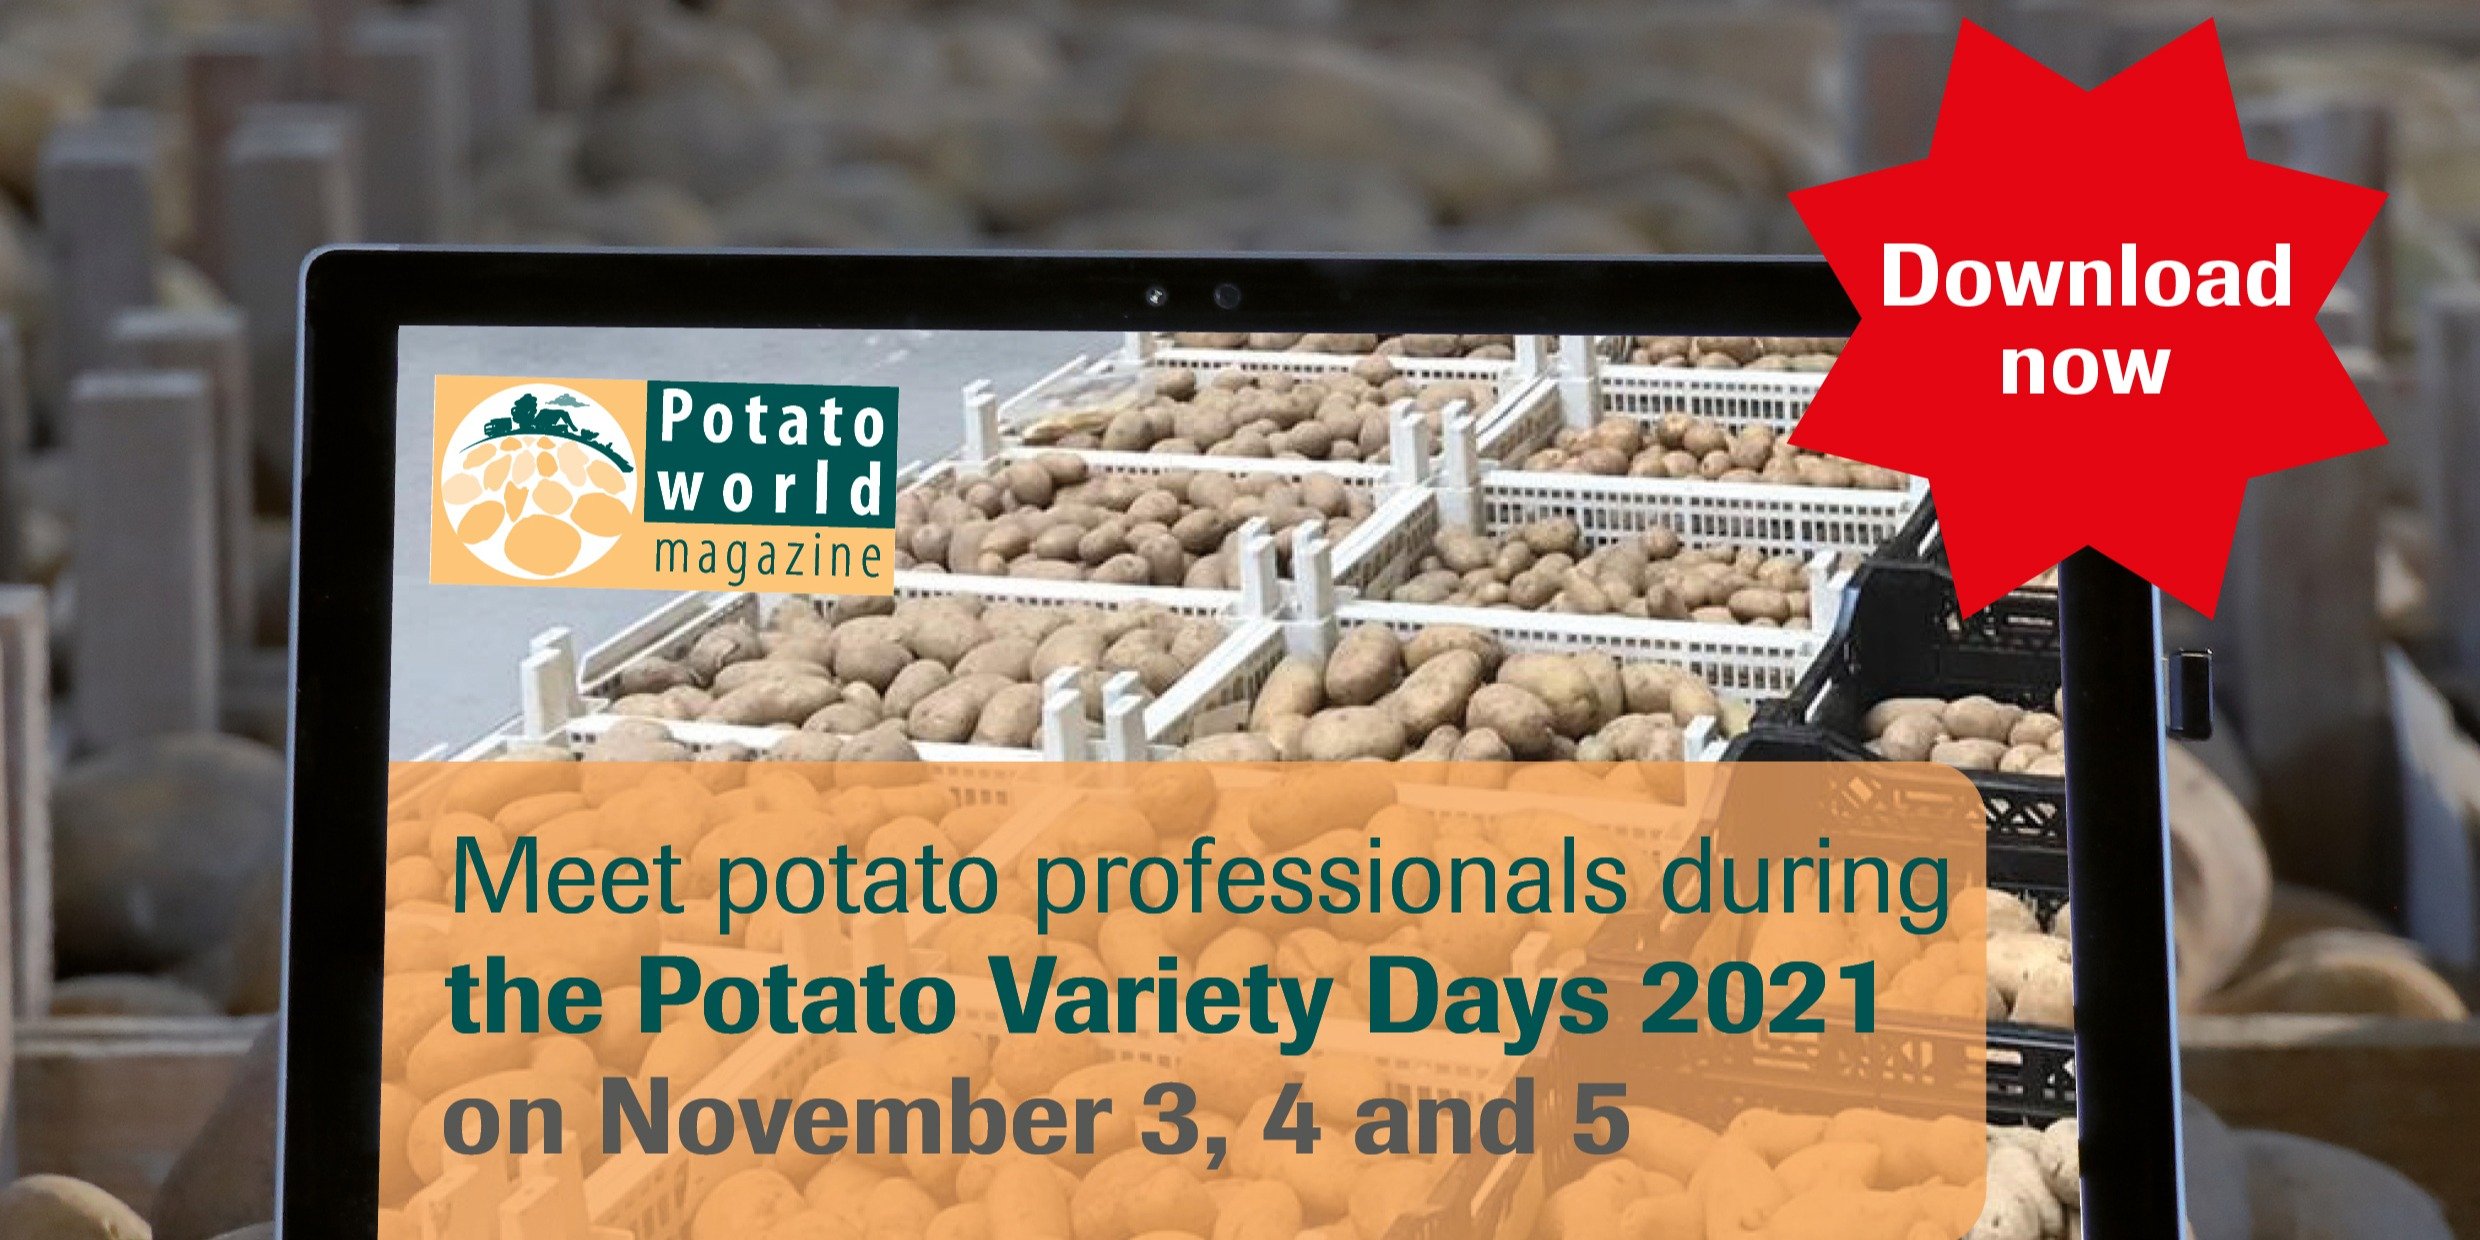 https://info.potatoworld.eu/potato-variety-days-2021-e-book